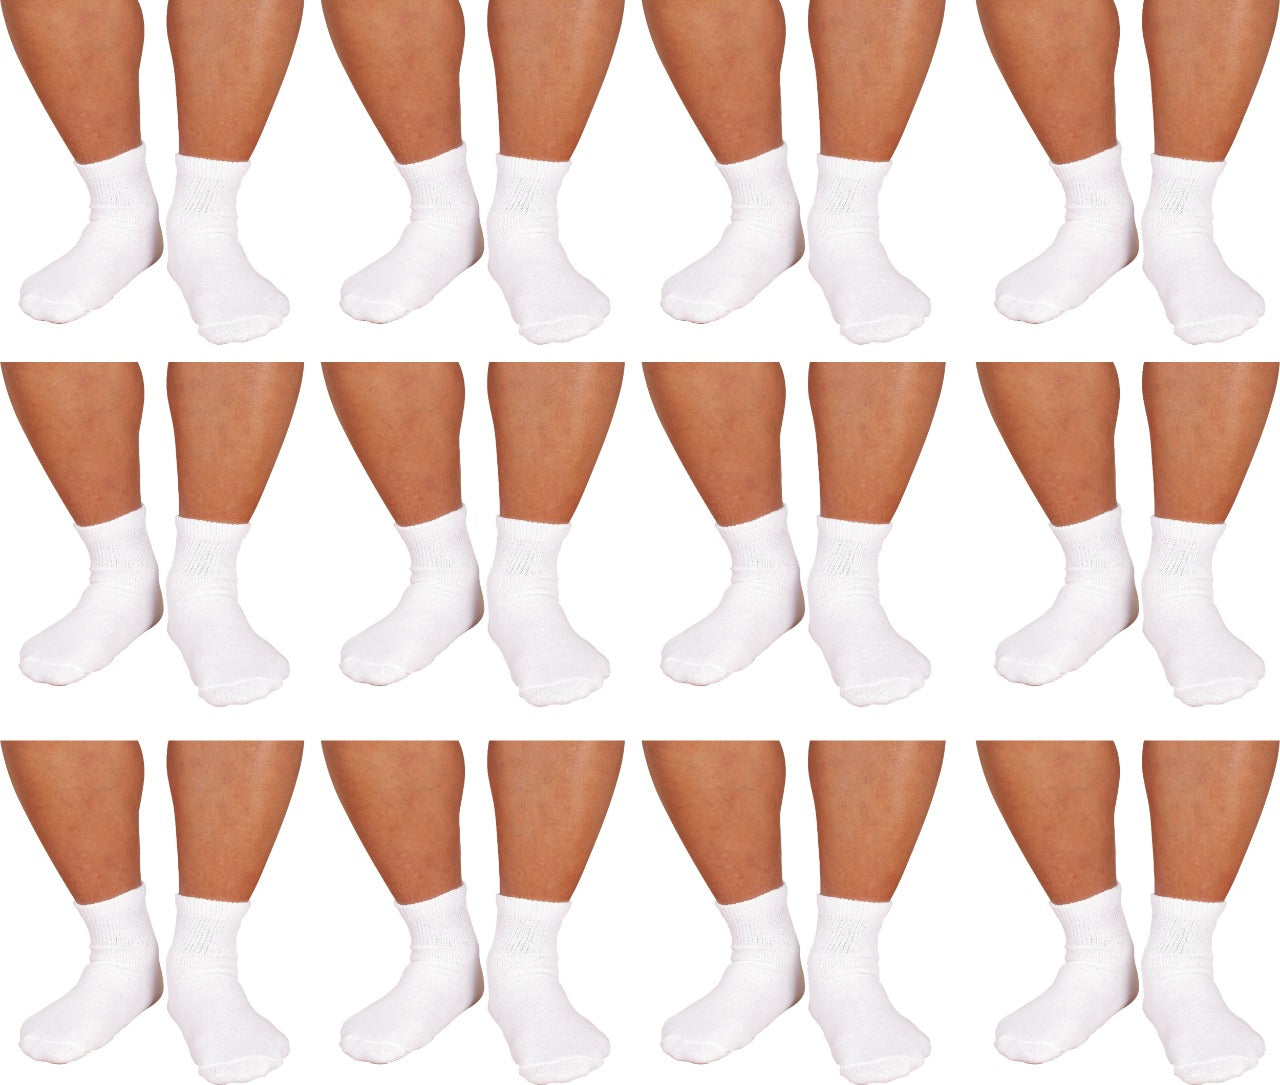 12 PAIRS PACK DIABETIC SOCKS FOR MEN WOMEN NON-BINDING DOCTOR APPROVED ANKLE SOCKS WHITE , BLACK , GREY COLORS